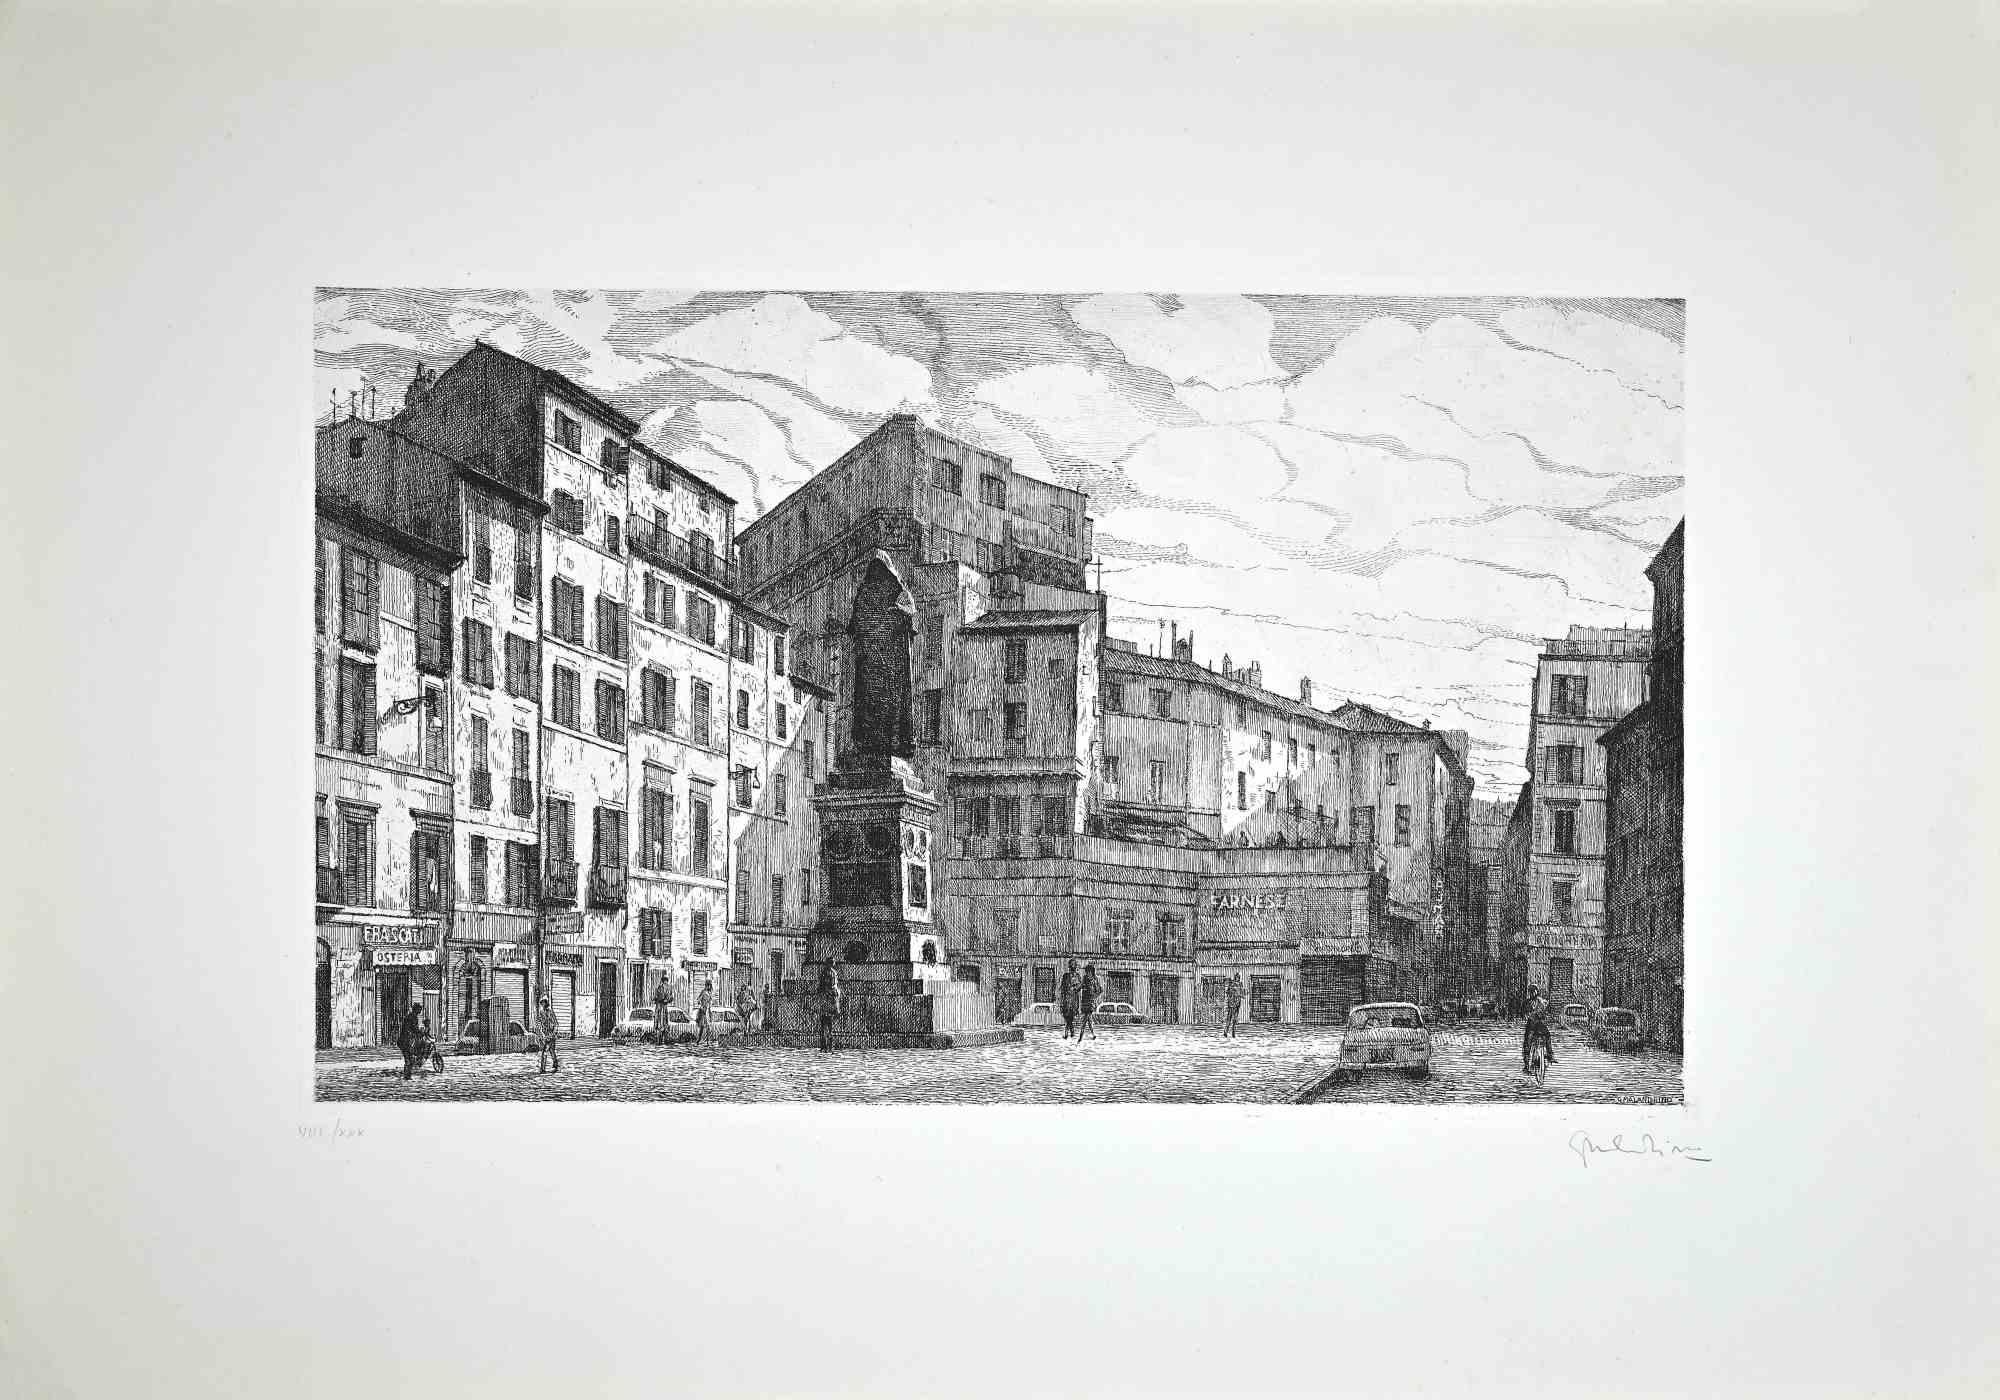 Blick auf die Piazza Campo dé Fiori  ist ein originales zeitgenössisches Kunstwerk, das 1970 von dem italienischen Künstler  Giuseppe Malandrino  (Modica, 1910 - Rom, 1979).
 
Radierung auf Karton.
 
Handsigniert  mit Bleistift in der rechten